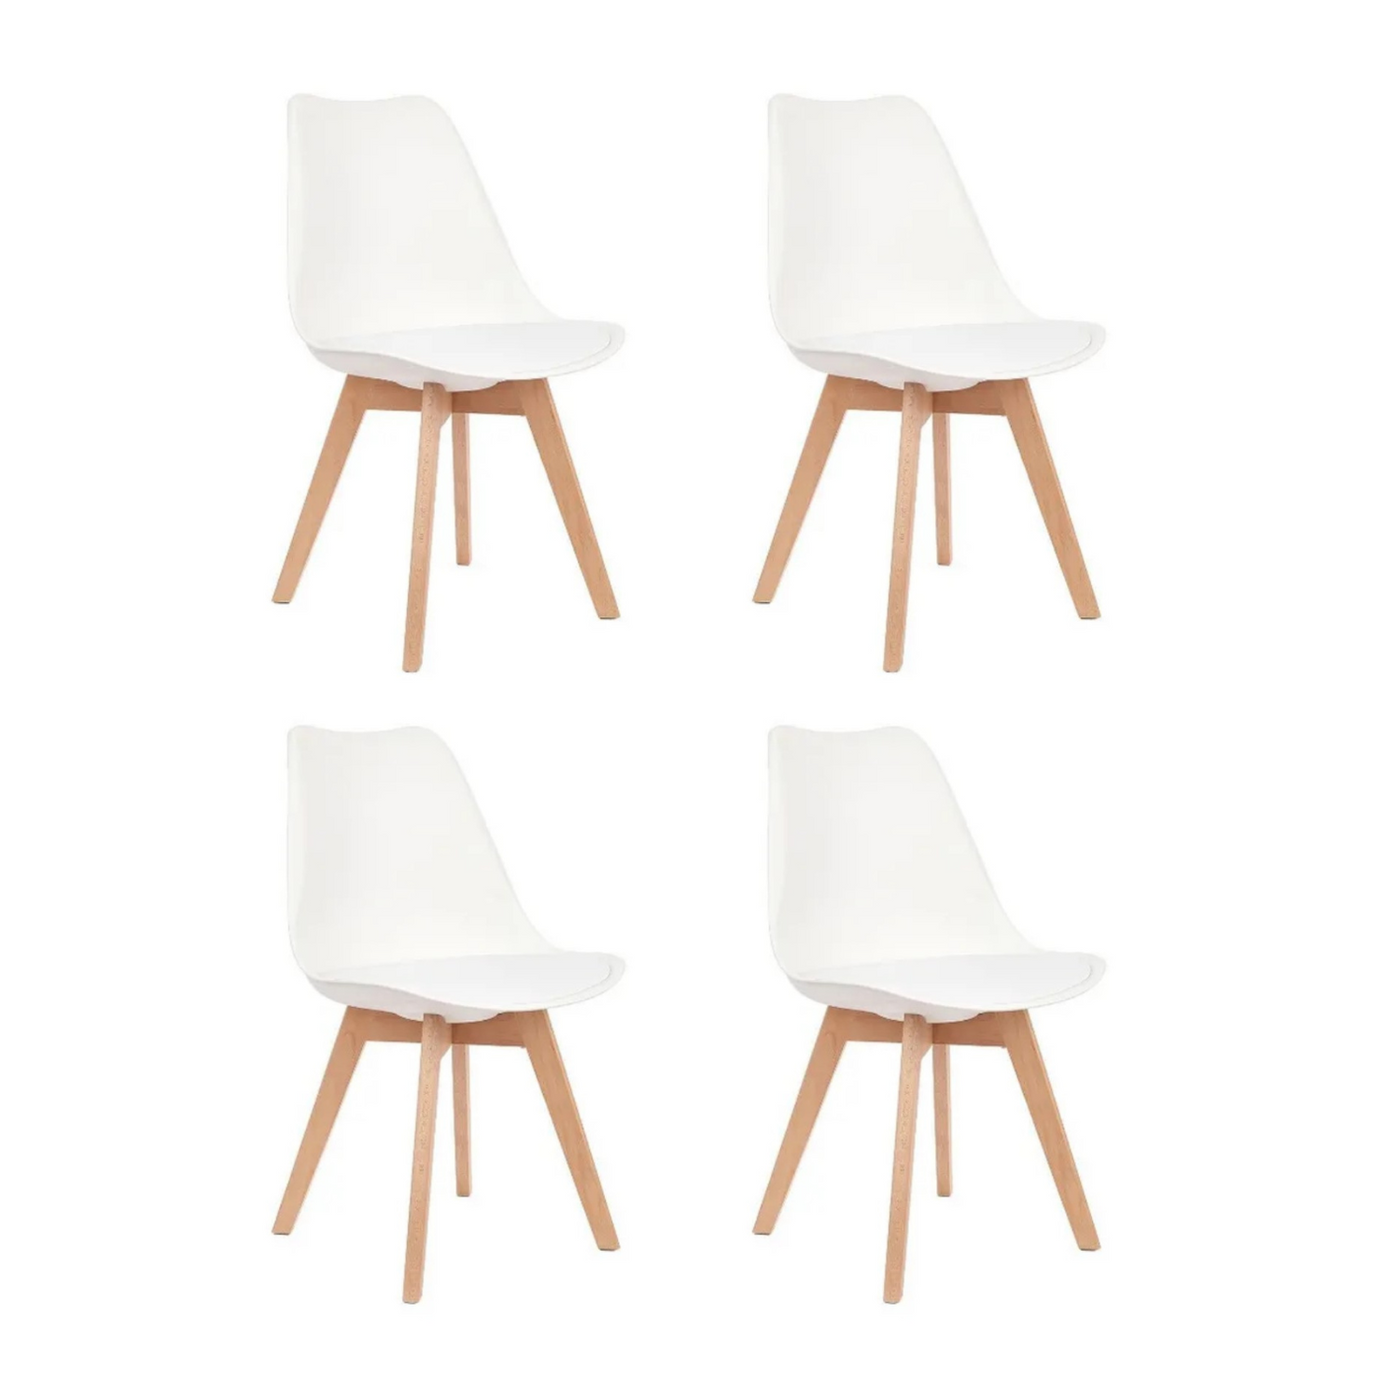 Set of 4 Modern Wooden Legs DSW Side Chair